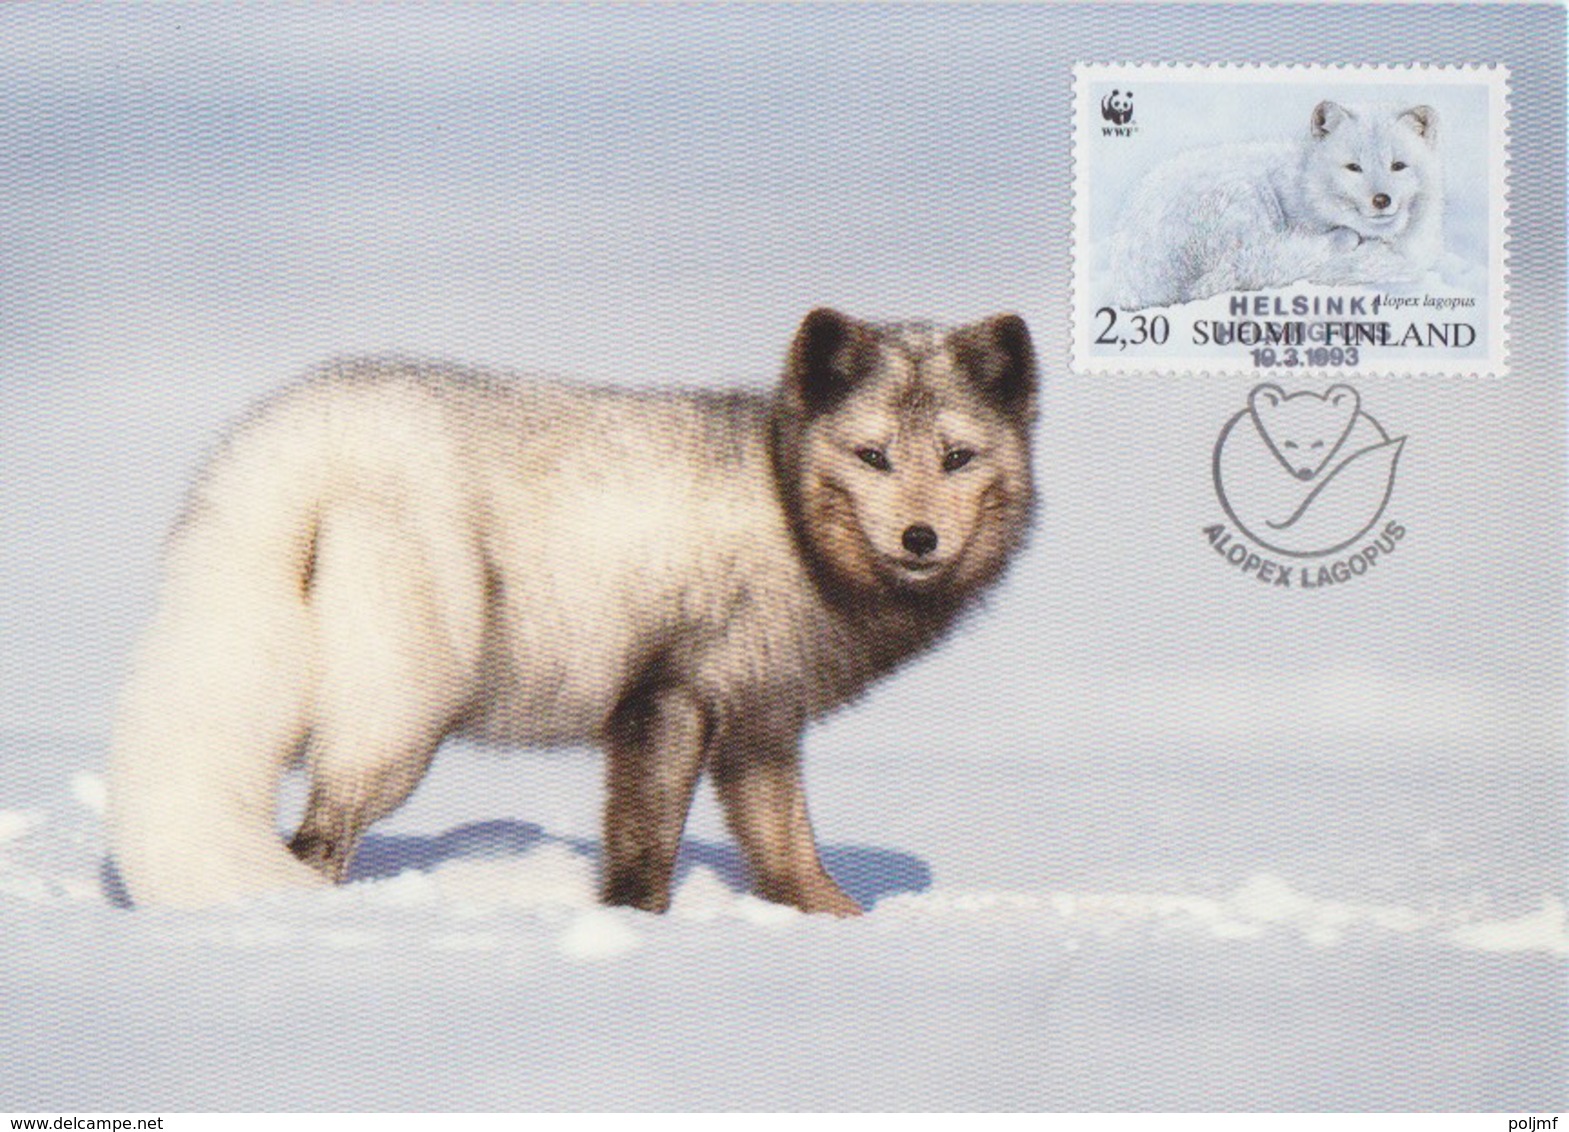 Finlande, 4 CP Max des N° 1166 à 1169 (renard arctique, été et hiver), Obl. Helsinski le 19/3/93 Alopex Lagopus